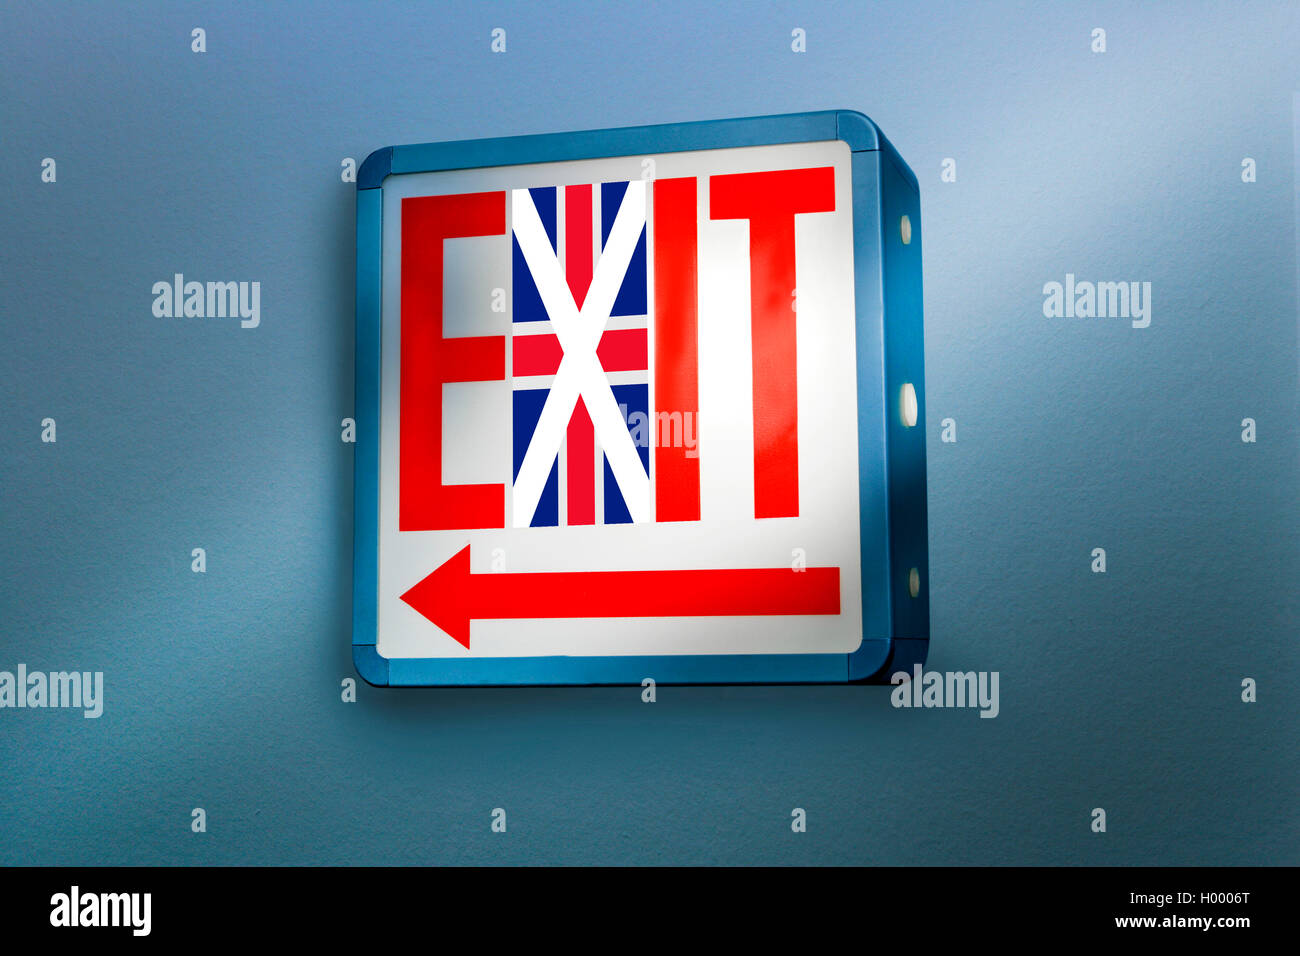 Sortie, enseigne lumineuse avec drapeau britannique, symbole de brexit Banque D'Images